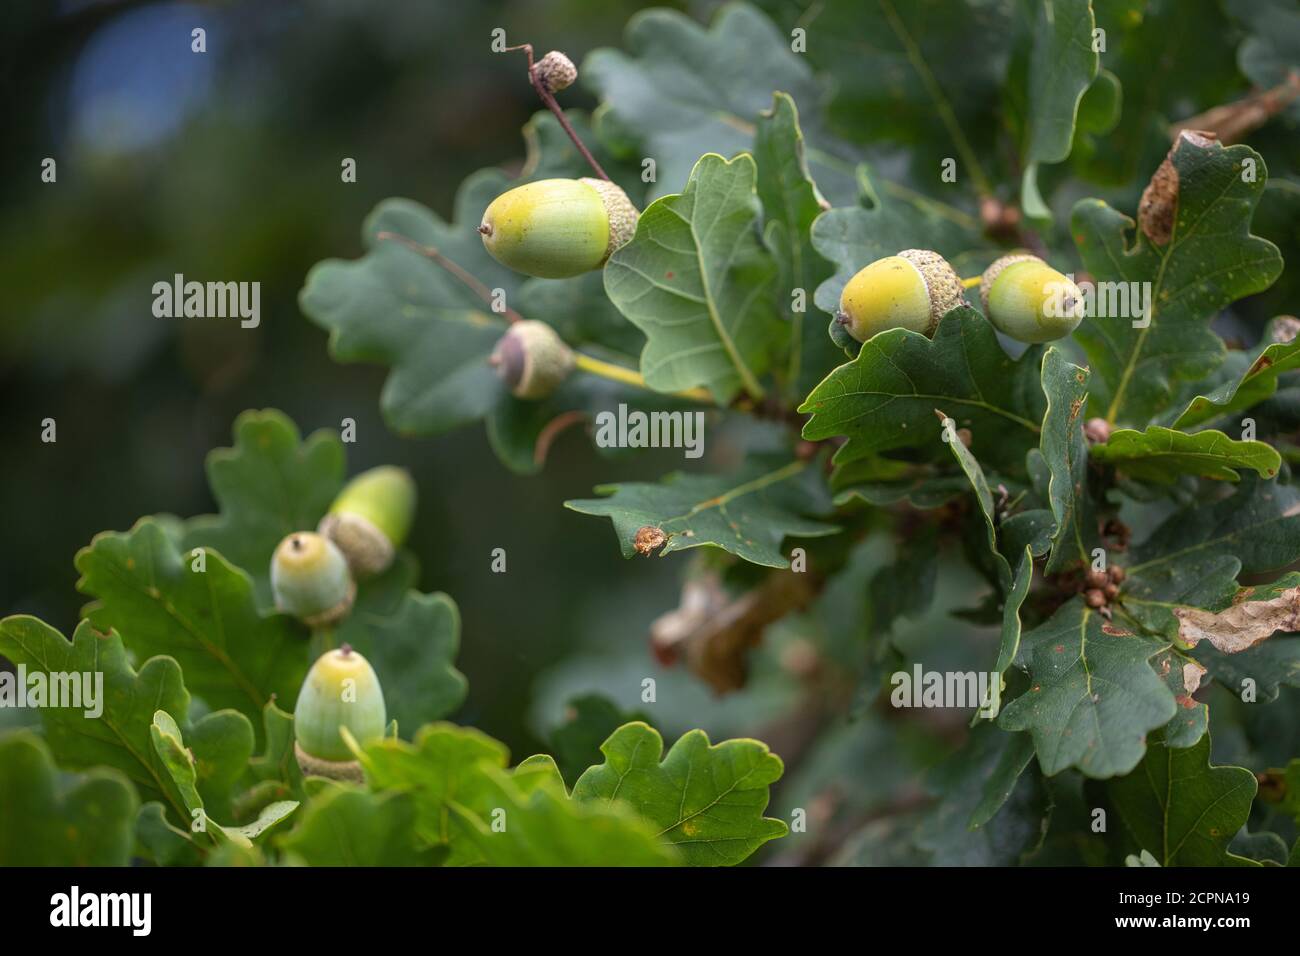 Foglie, fogliame e Acorn. Frutti della quercia inglese o peduncolare (Quercus robur). Primo piano. Vista dal basso, guardando in alto nei rami. Foto Stock